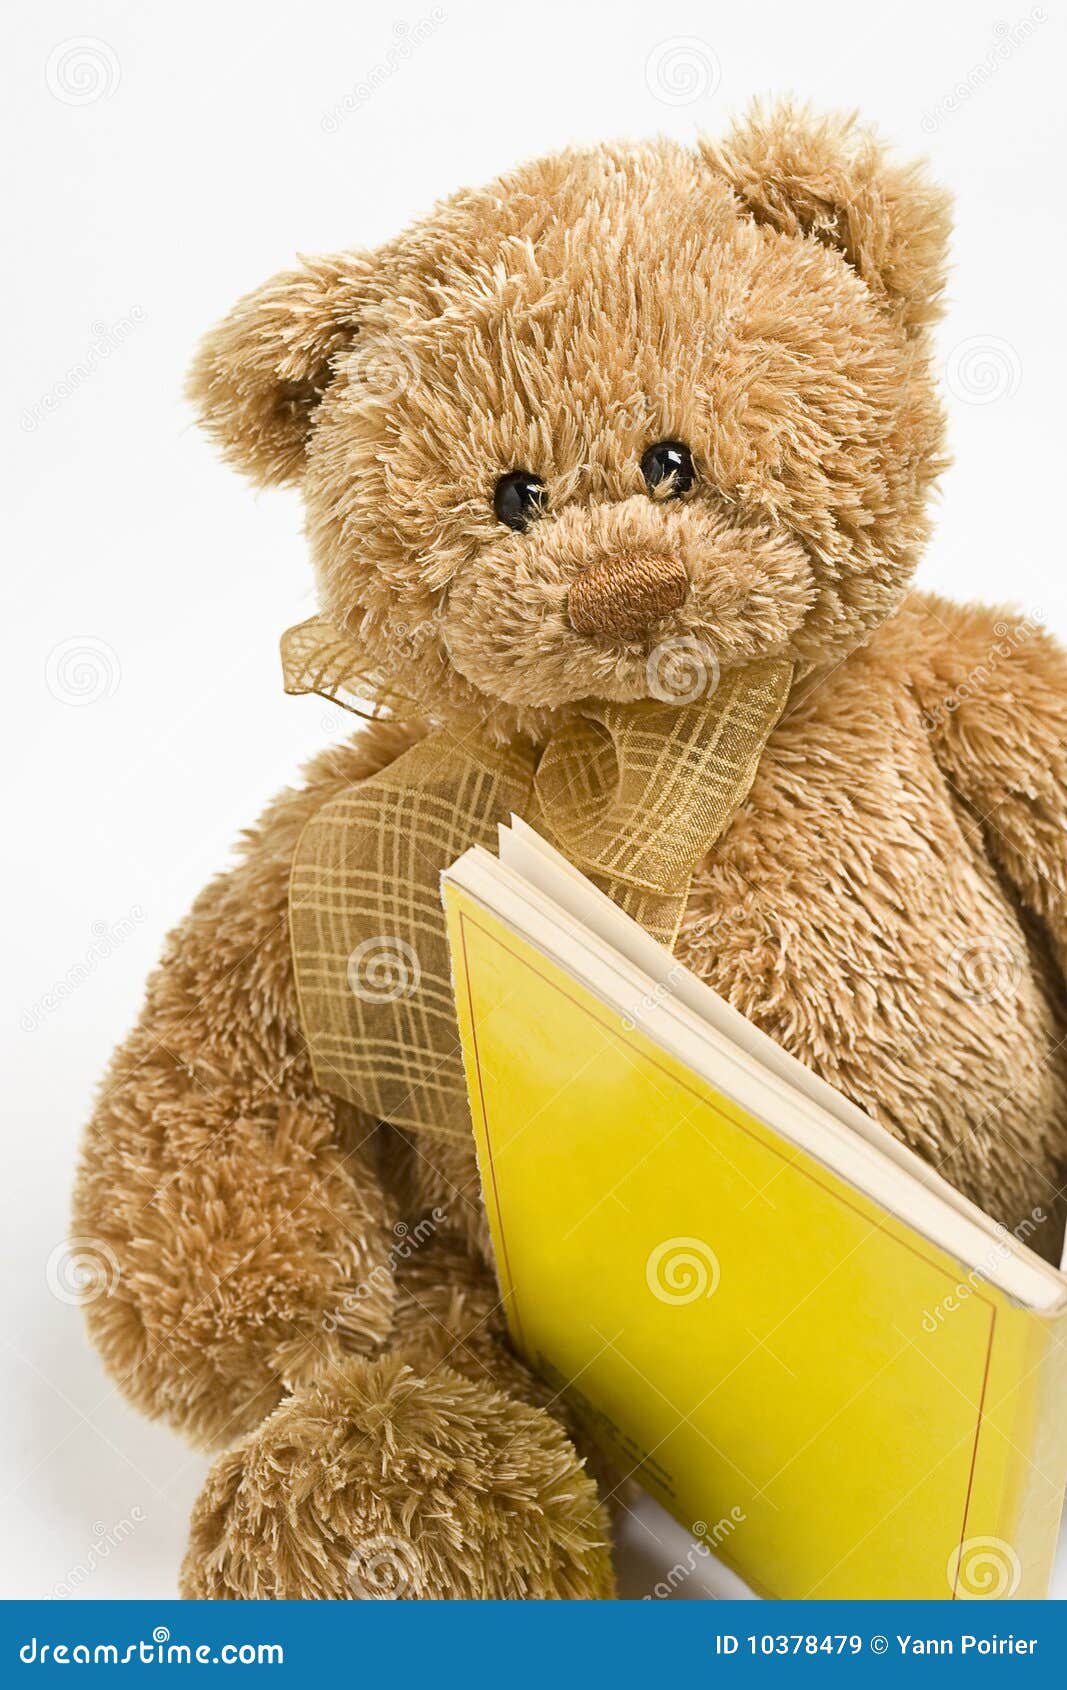 teddy bear reading clipart - photo #46